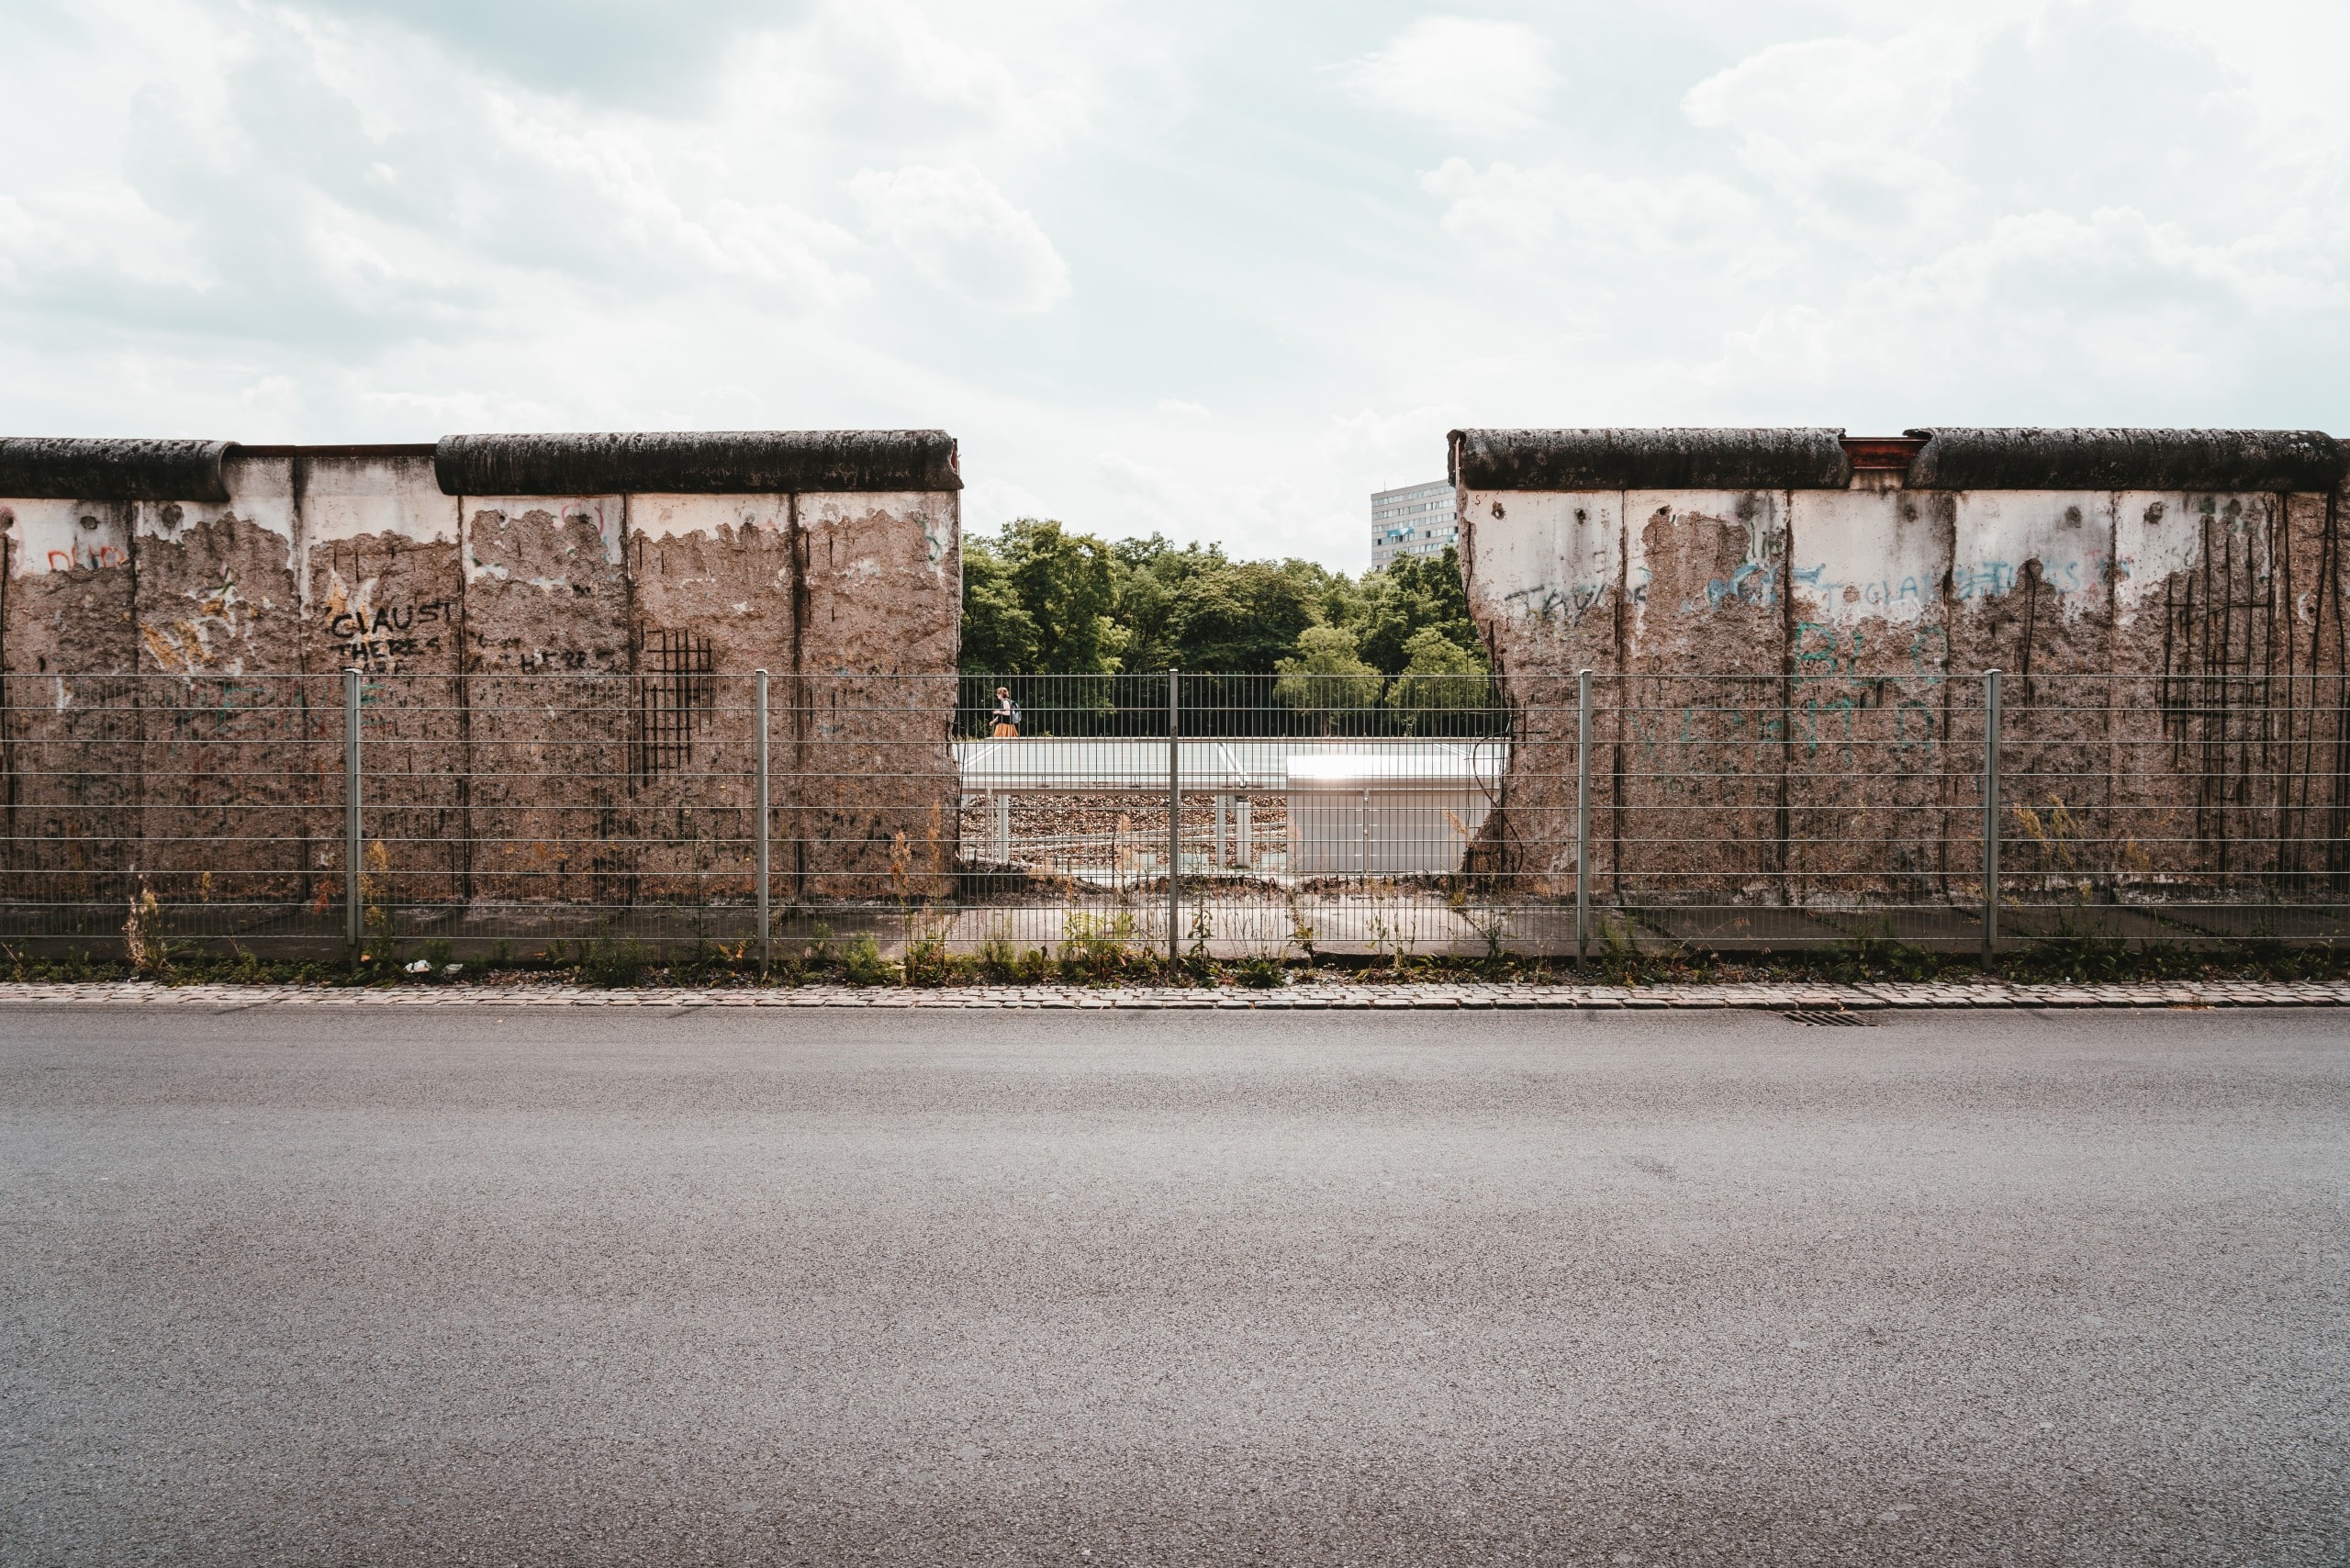 Die Berliner Mauer spielt bis heute eine wichtige Rolle in der Erinnerungskultur der Hauptstadt. Bildquelle: Unsplash